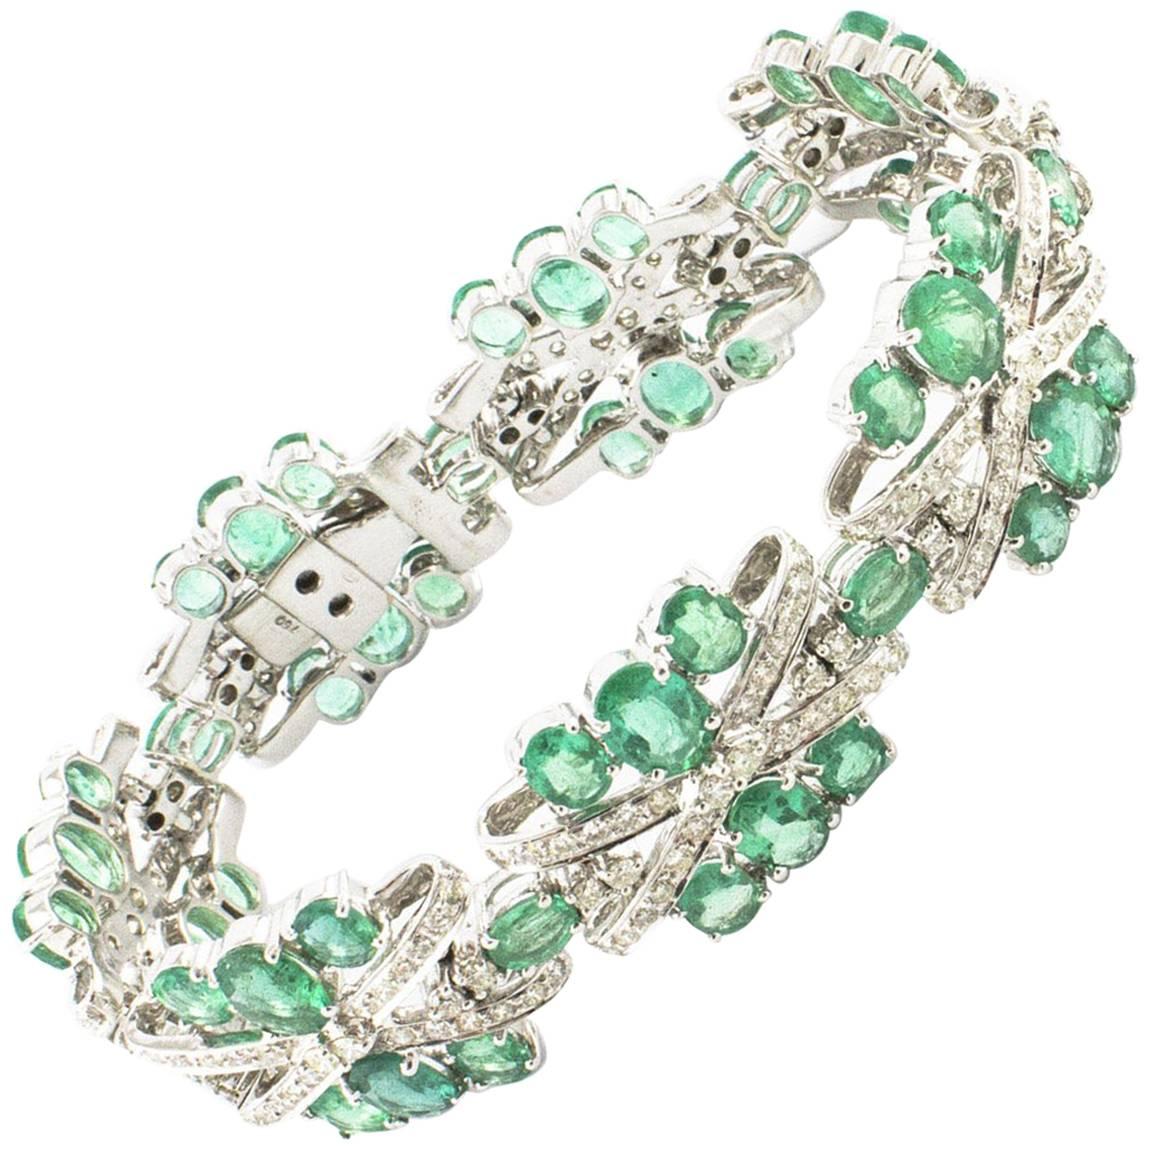   Diamonds Emeralds, 18 kt White Gold Bracelet For Sale